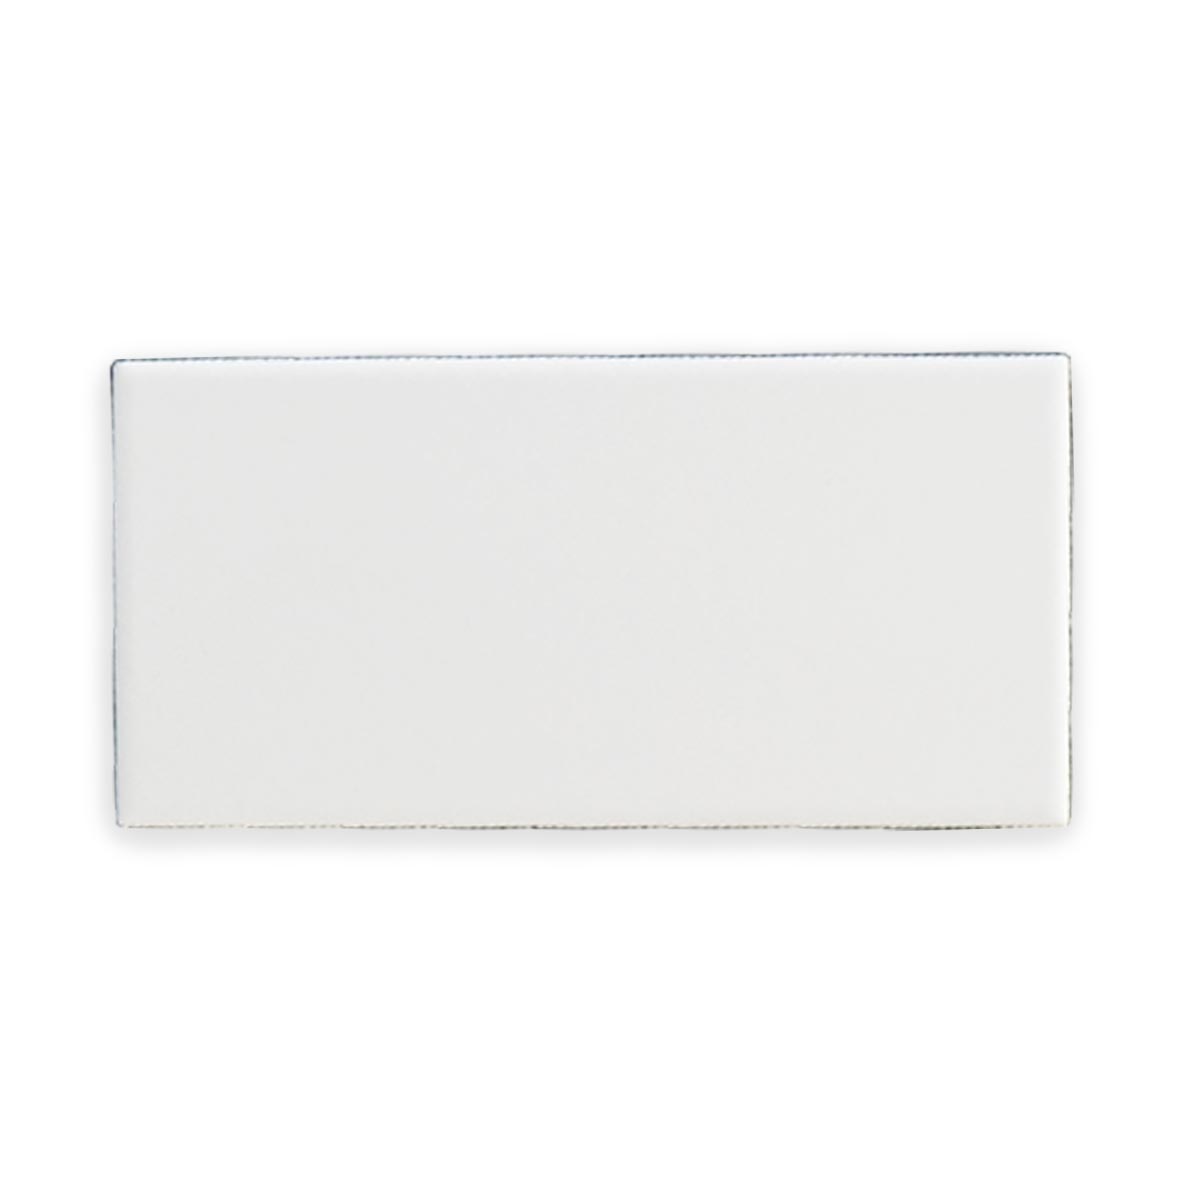 Deluxe Metro Flat White Matt Wall Tile 7.5x15cm